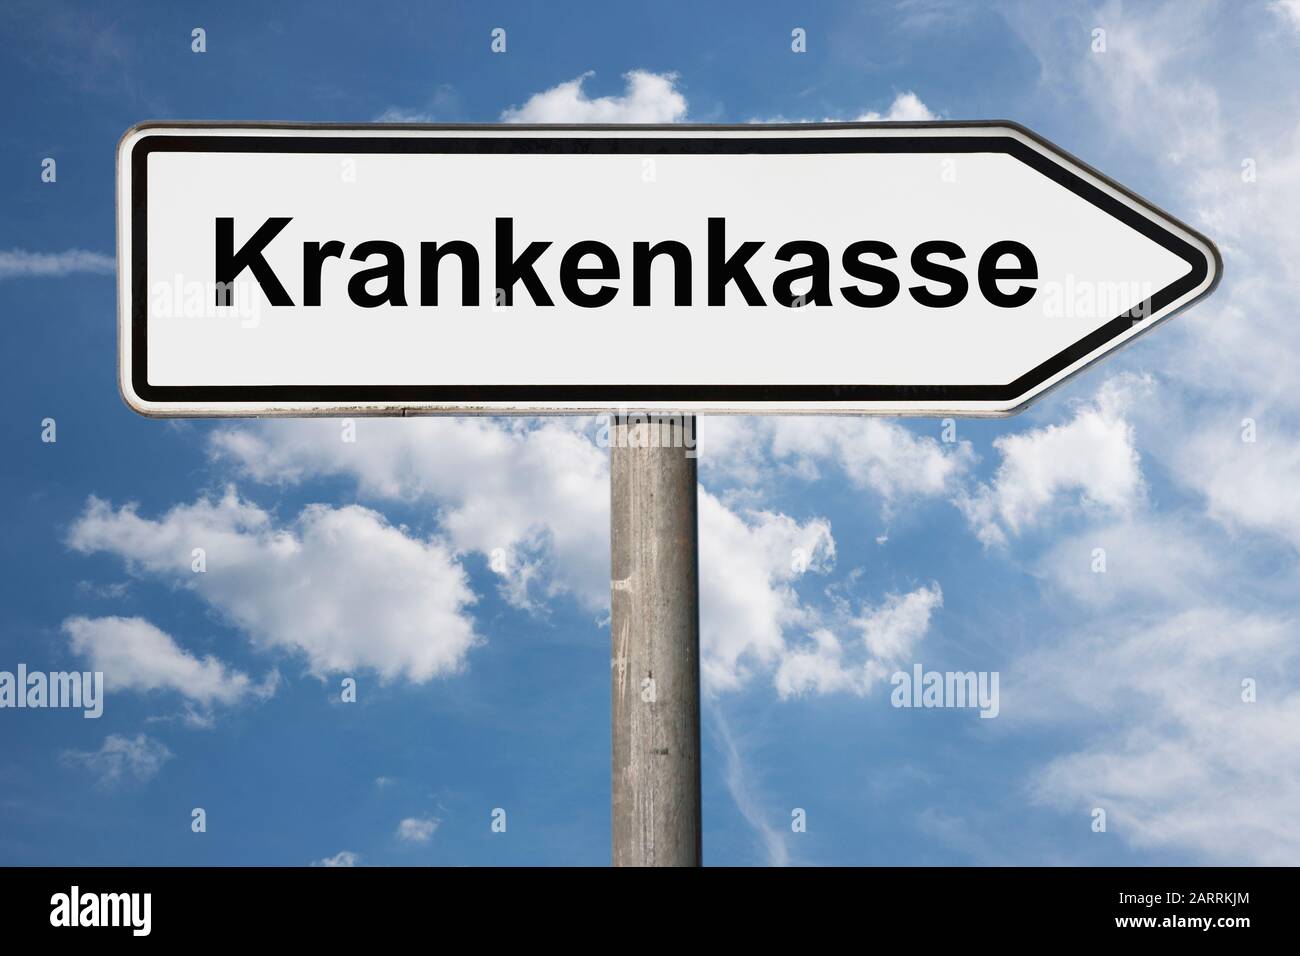 Photo détaillée d'une pancarte portant l'inscription Krankenkasse (compagnie d'assurance maladie) Banque D'Images